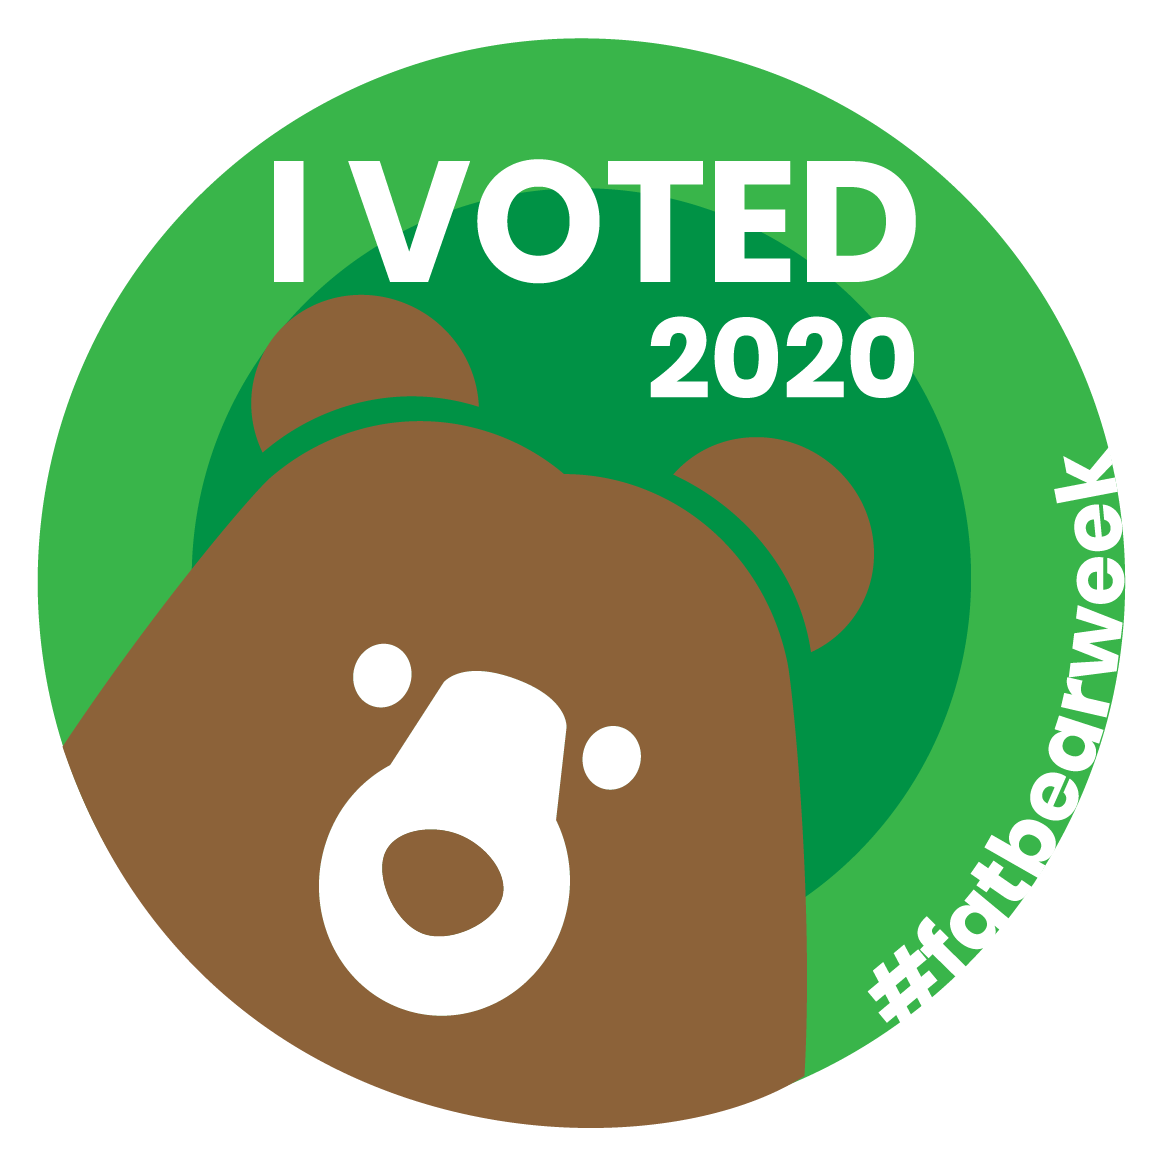 I voted 2020